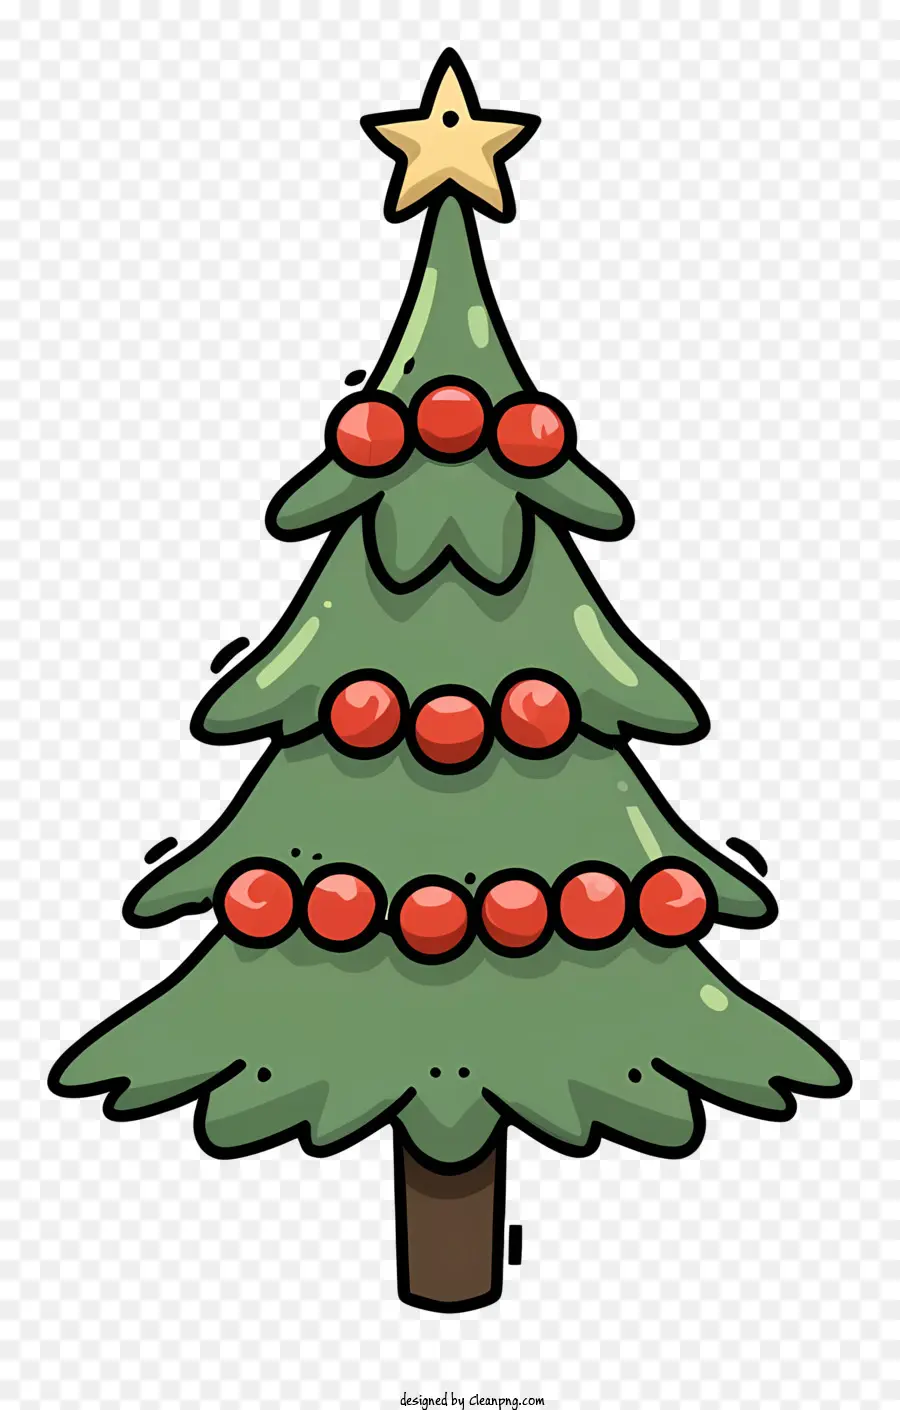 cây giáng sinh - Cây Giáng sinh xanh với quả mọng đỏ, thiết kế đơn giản